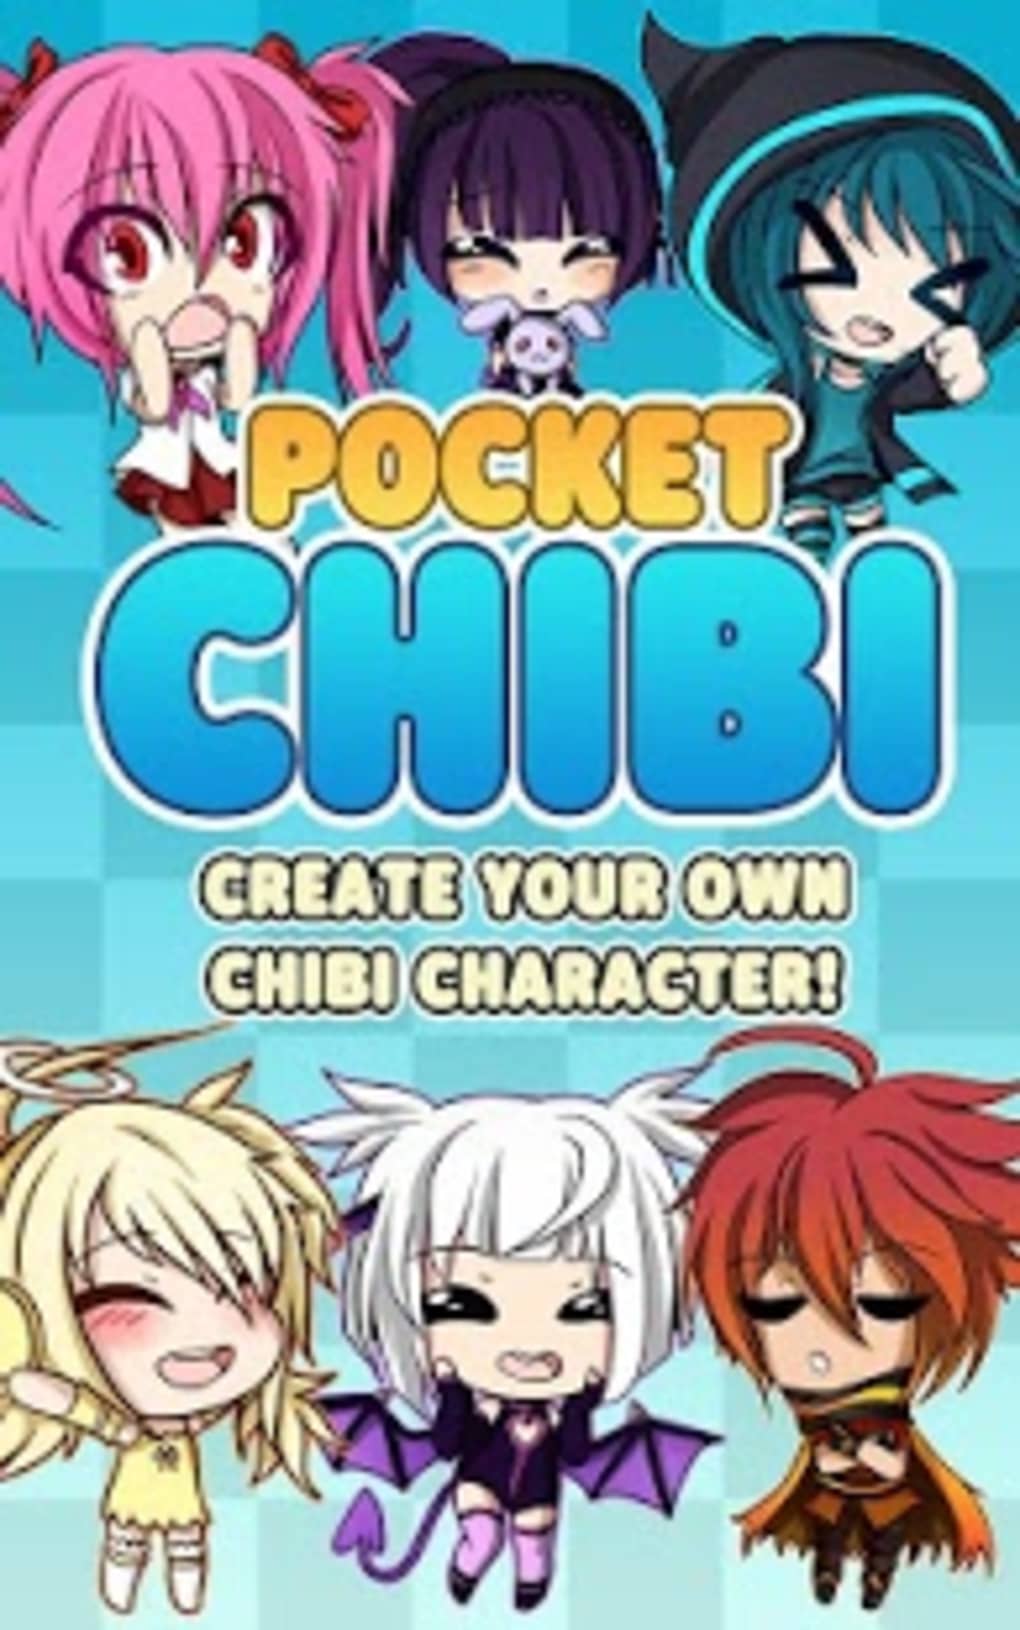 Pocket Chibi Android APK:
Bạn muốn tạo ra một chiếc avatar Chibi độc đáo trên điện thoại Android của mình? Pocket Chibi Android APK sẽ giúp bạn thực hiện điều đó. Với giao diện thân thiện và nhiều công cụ tùy biến, bạn sẽ có thể tạo ra một chiếc avatar Chibi độc quyền và sáng tạo.